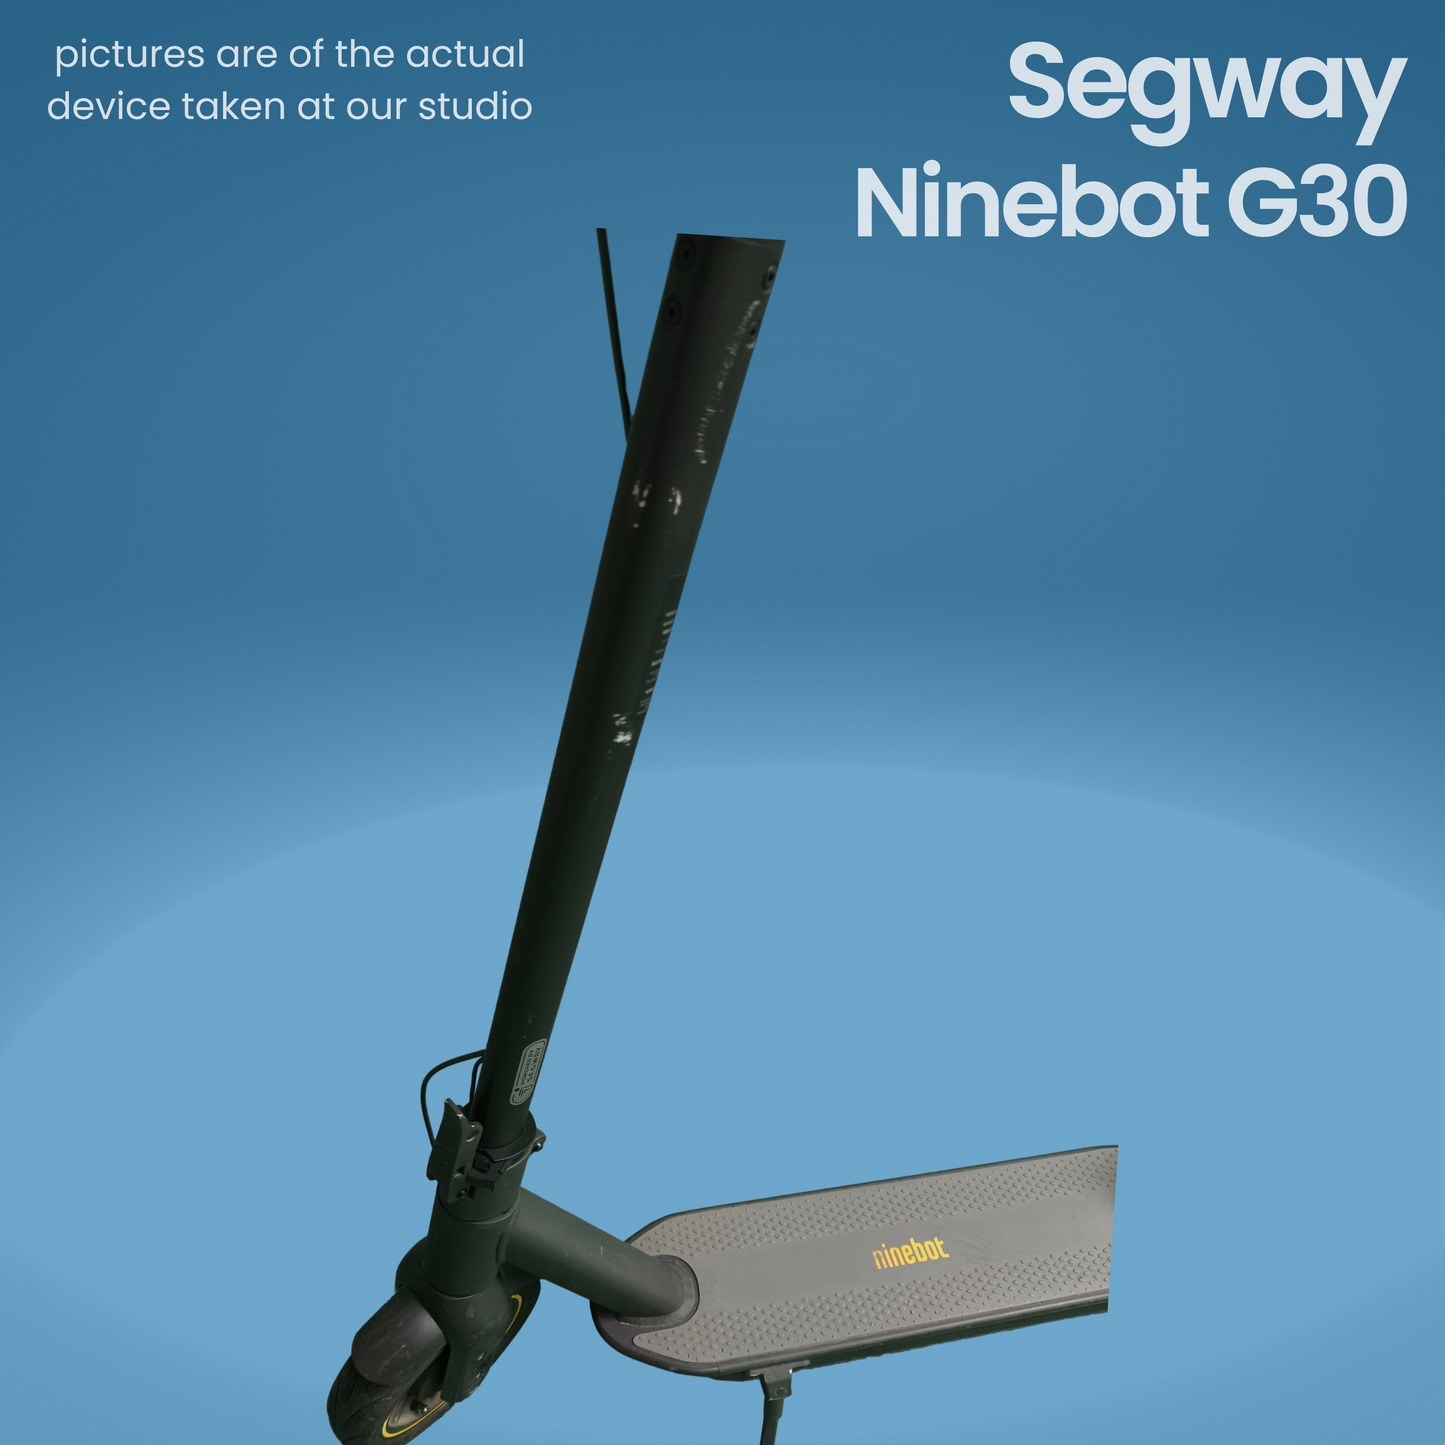 Segway Ninebot G30